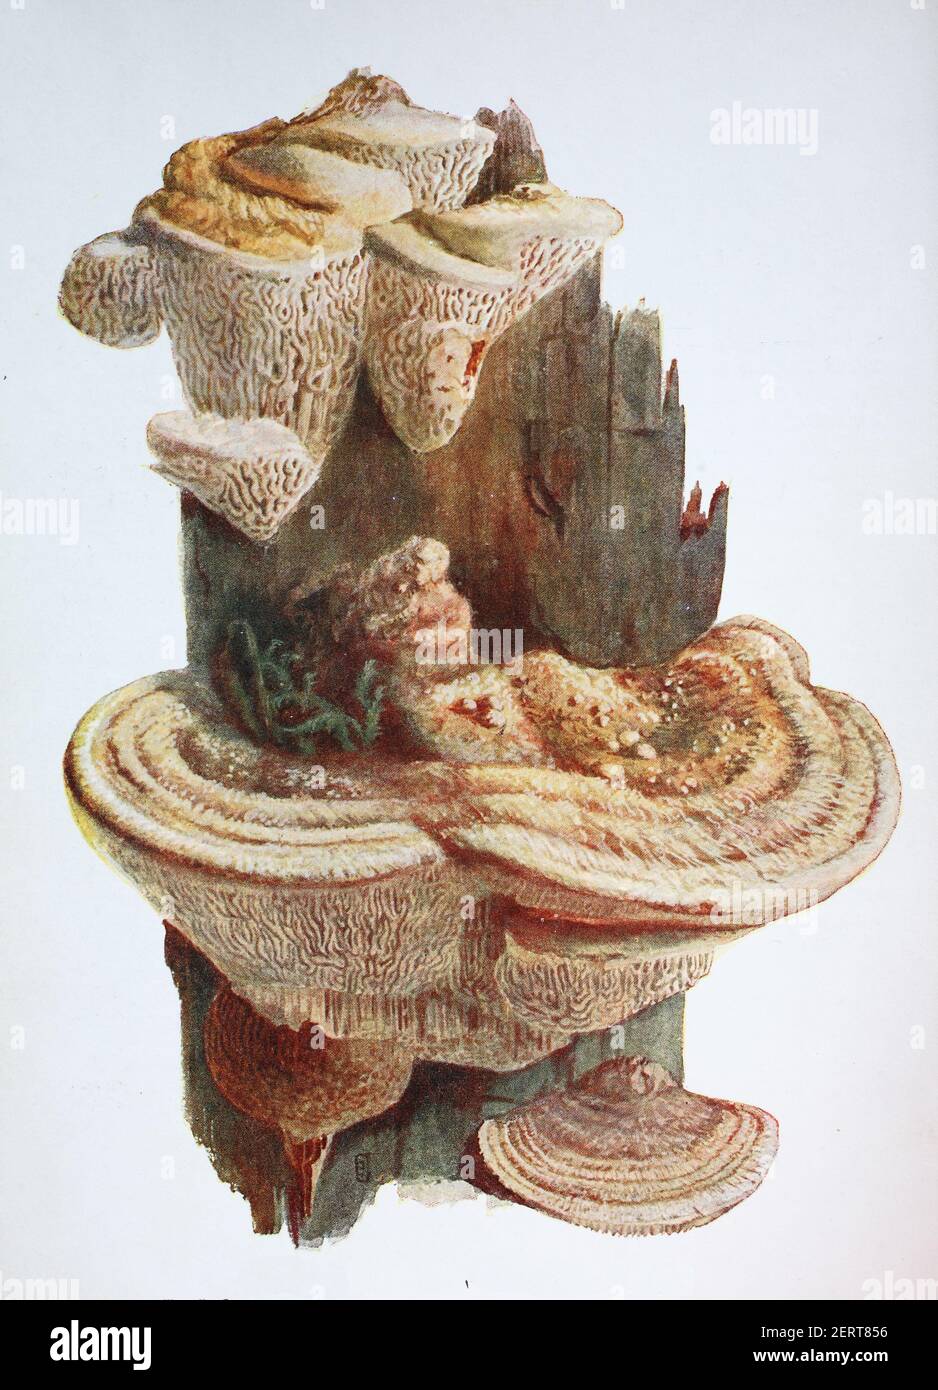 Daedalea quercina è una specie di fungo dell'ordine dei Polporales. È la specie tipo del genere Daedalea. Comunemente noto come il fungo di mazegill di quercia o labirinto-gill, riproduzione digitale di un'immagine di Emil Doerstling (1859-1940) Foto Stock